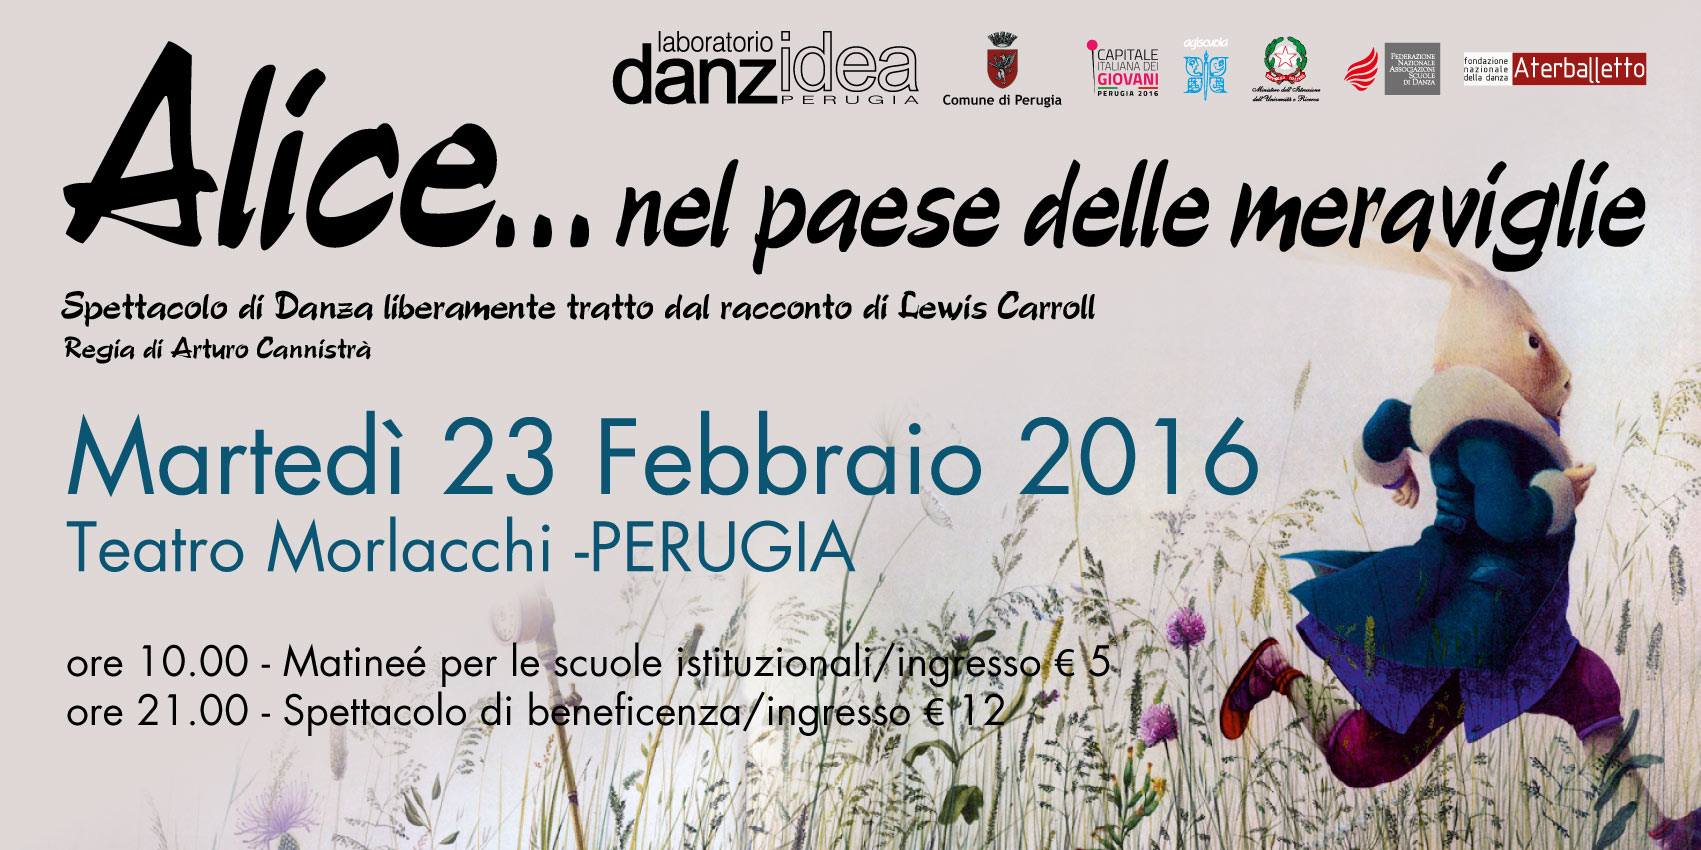 Spettacolo del Laboratorio Danzidea. Teatro Morlacchi 23 febbraio 2016